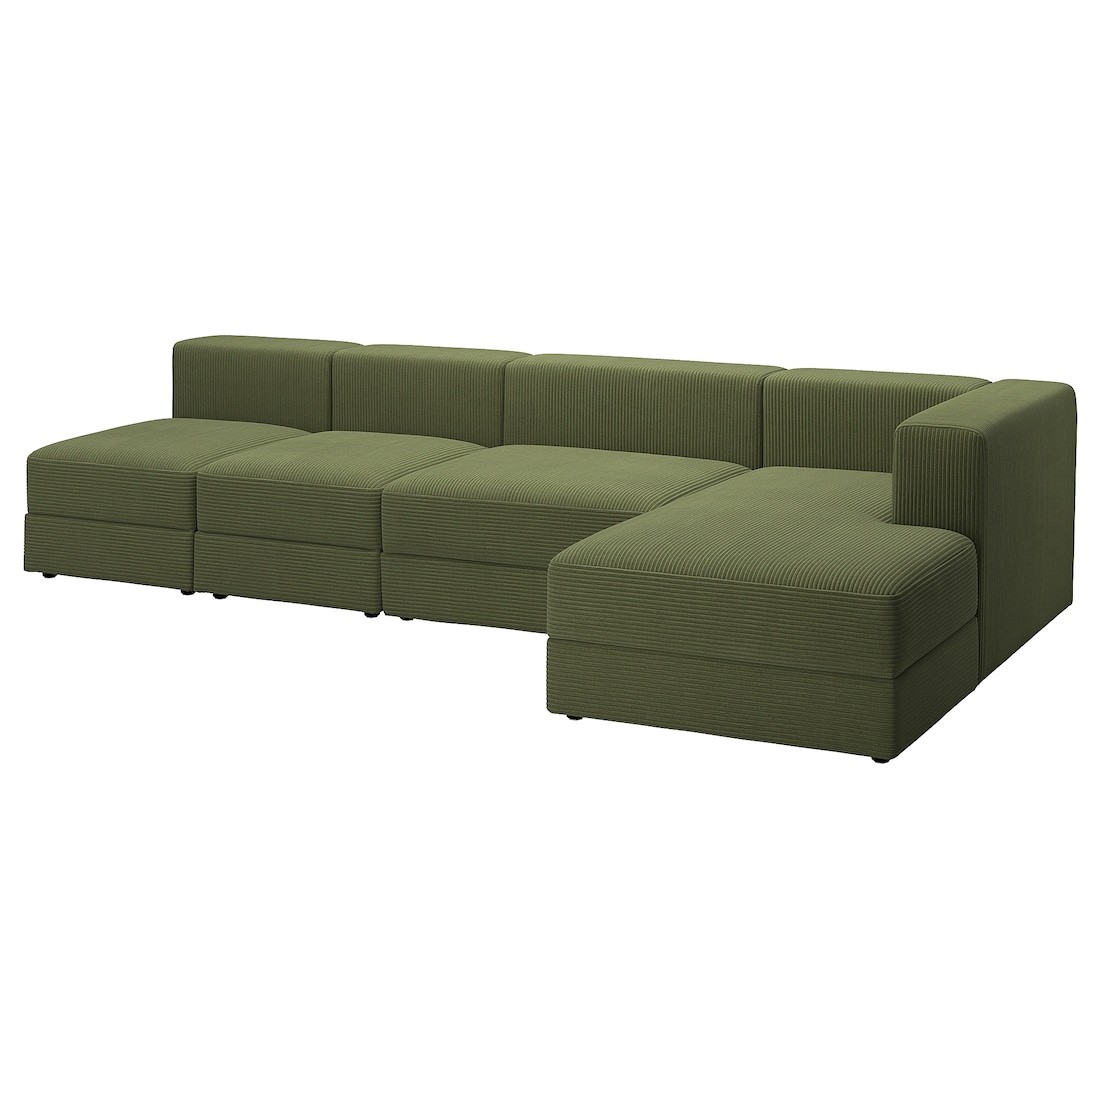 IKEA JÄTTEBO 4, 5-місний модульний диван з шезлонгом, правосторонній / Samsala темний жовто-зелений 99471402 994.714.02